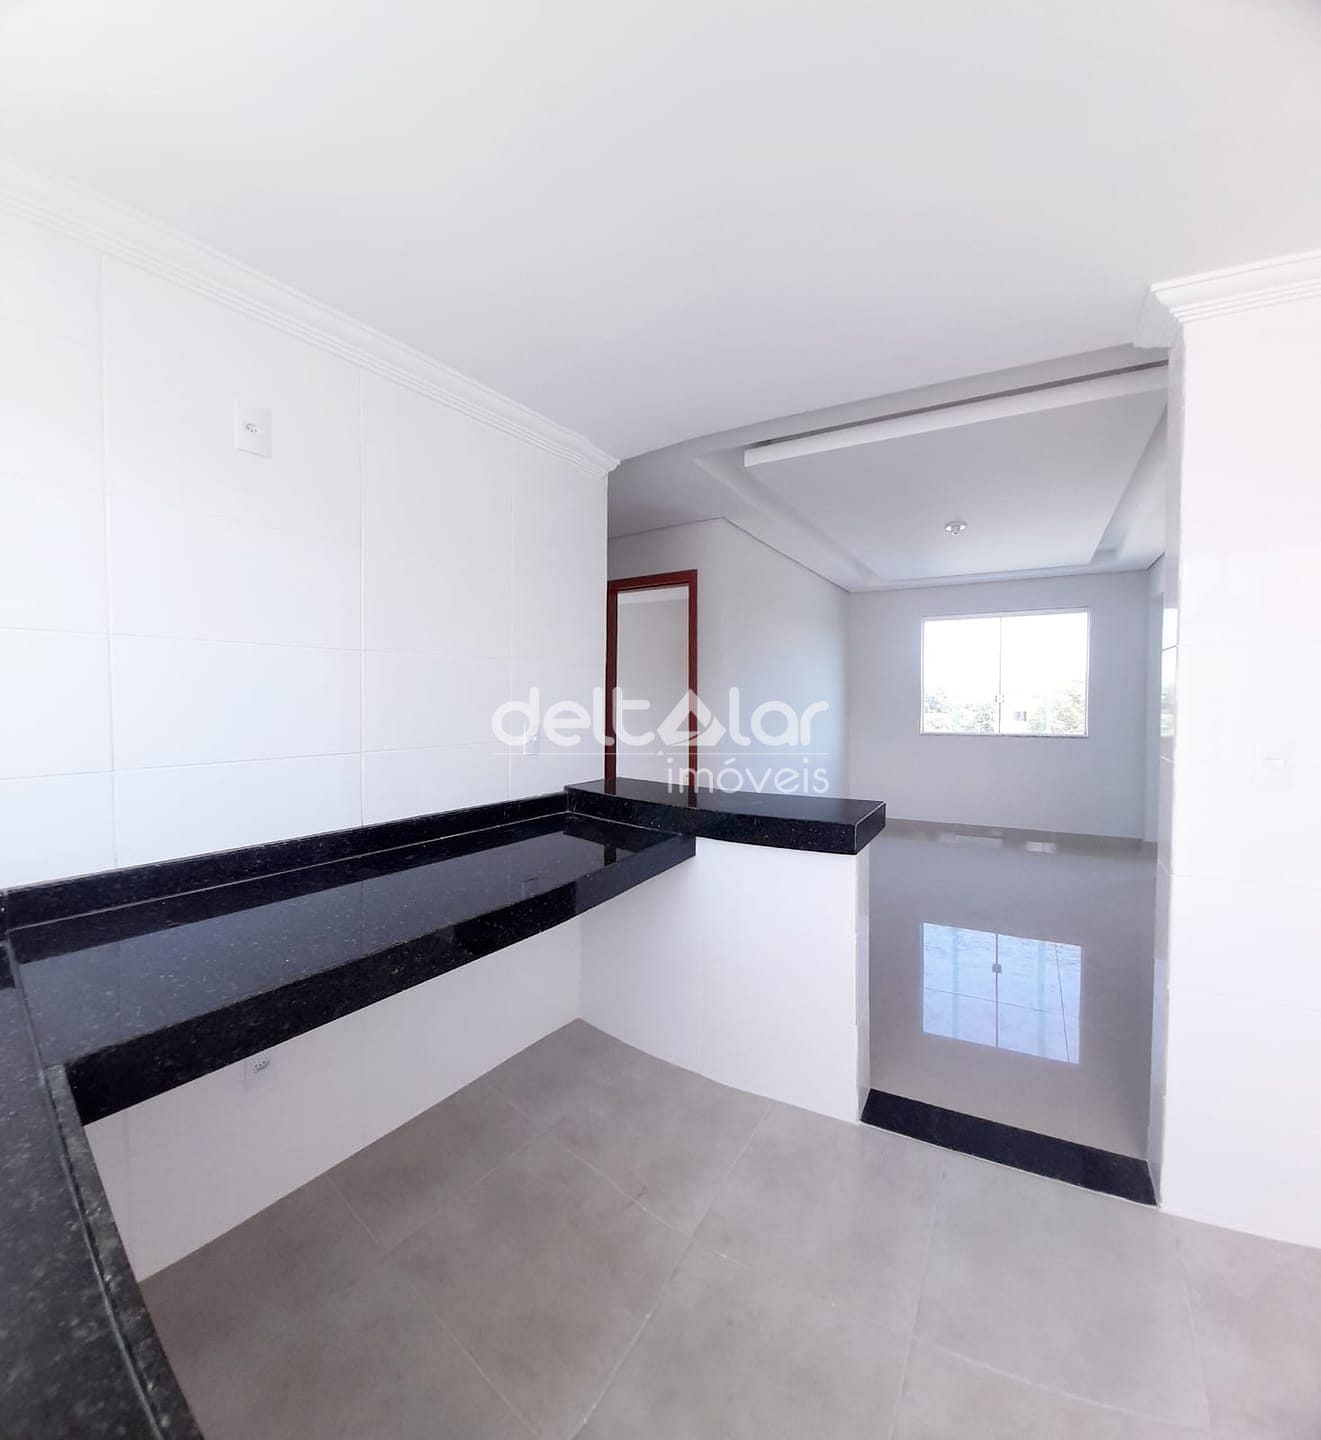 Apartamento em Piratininga (Venda Nova), Belo Horizonte/MG de 55m² 2 quartos à venda por R$ 314.000,00